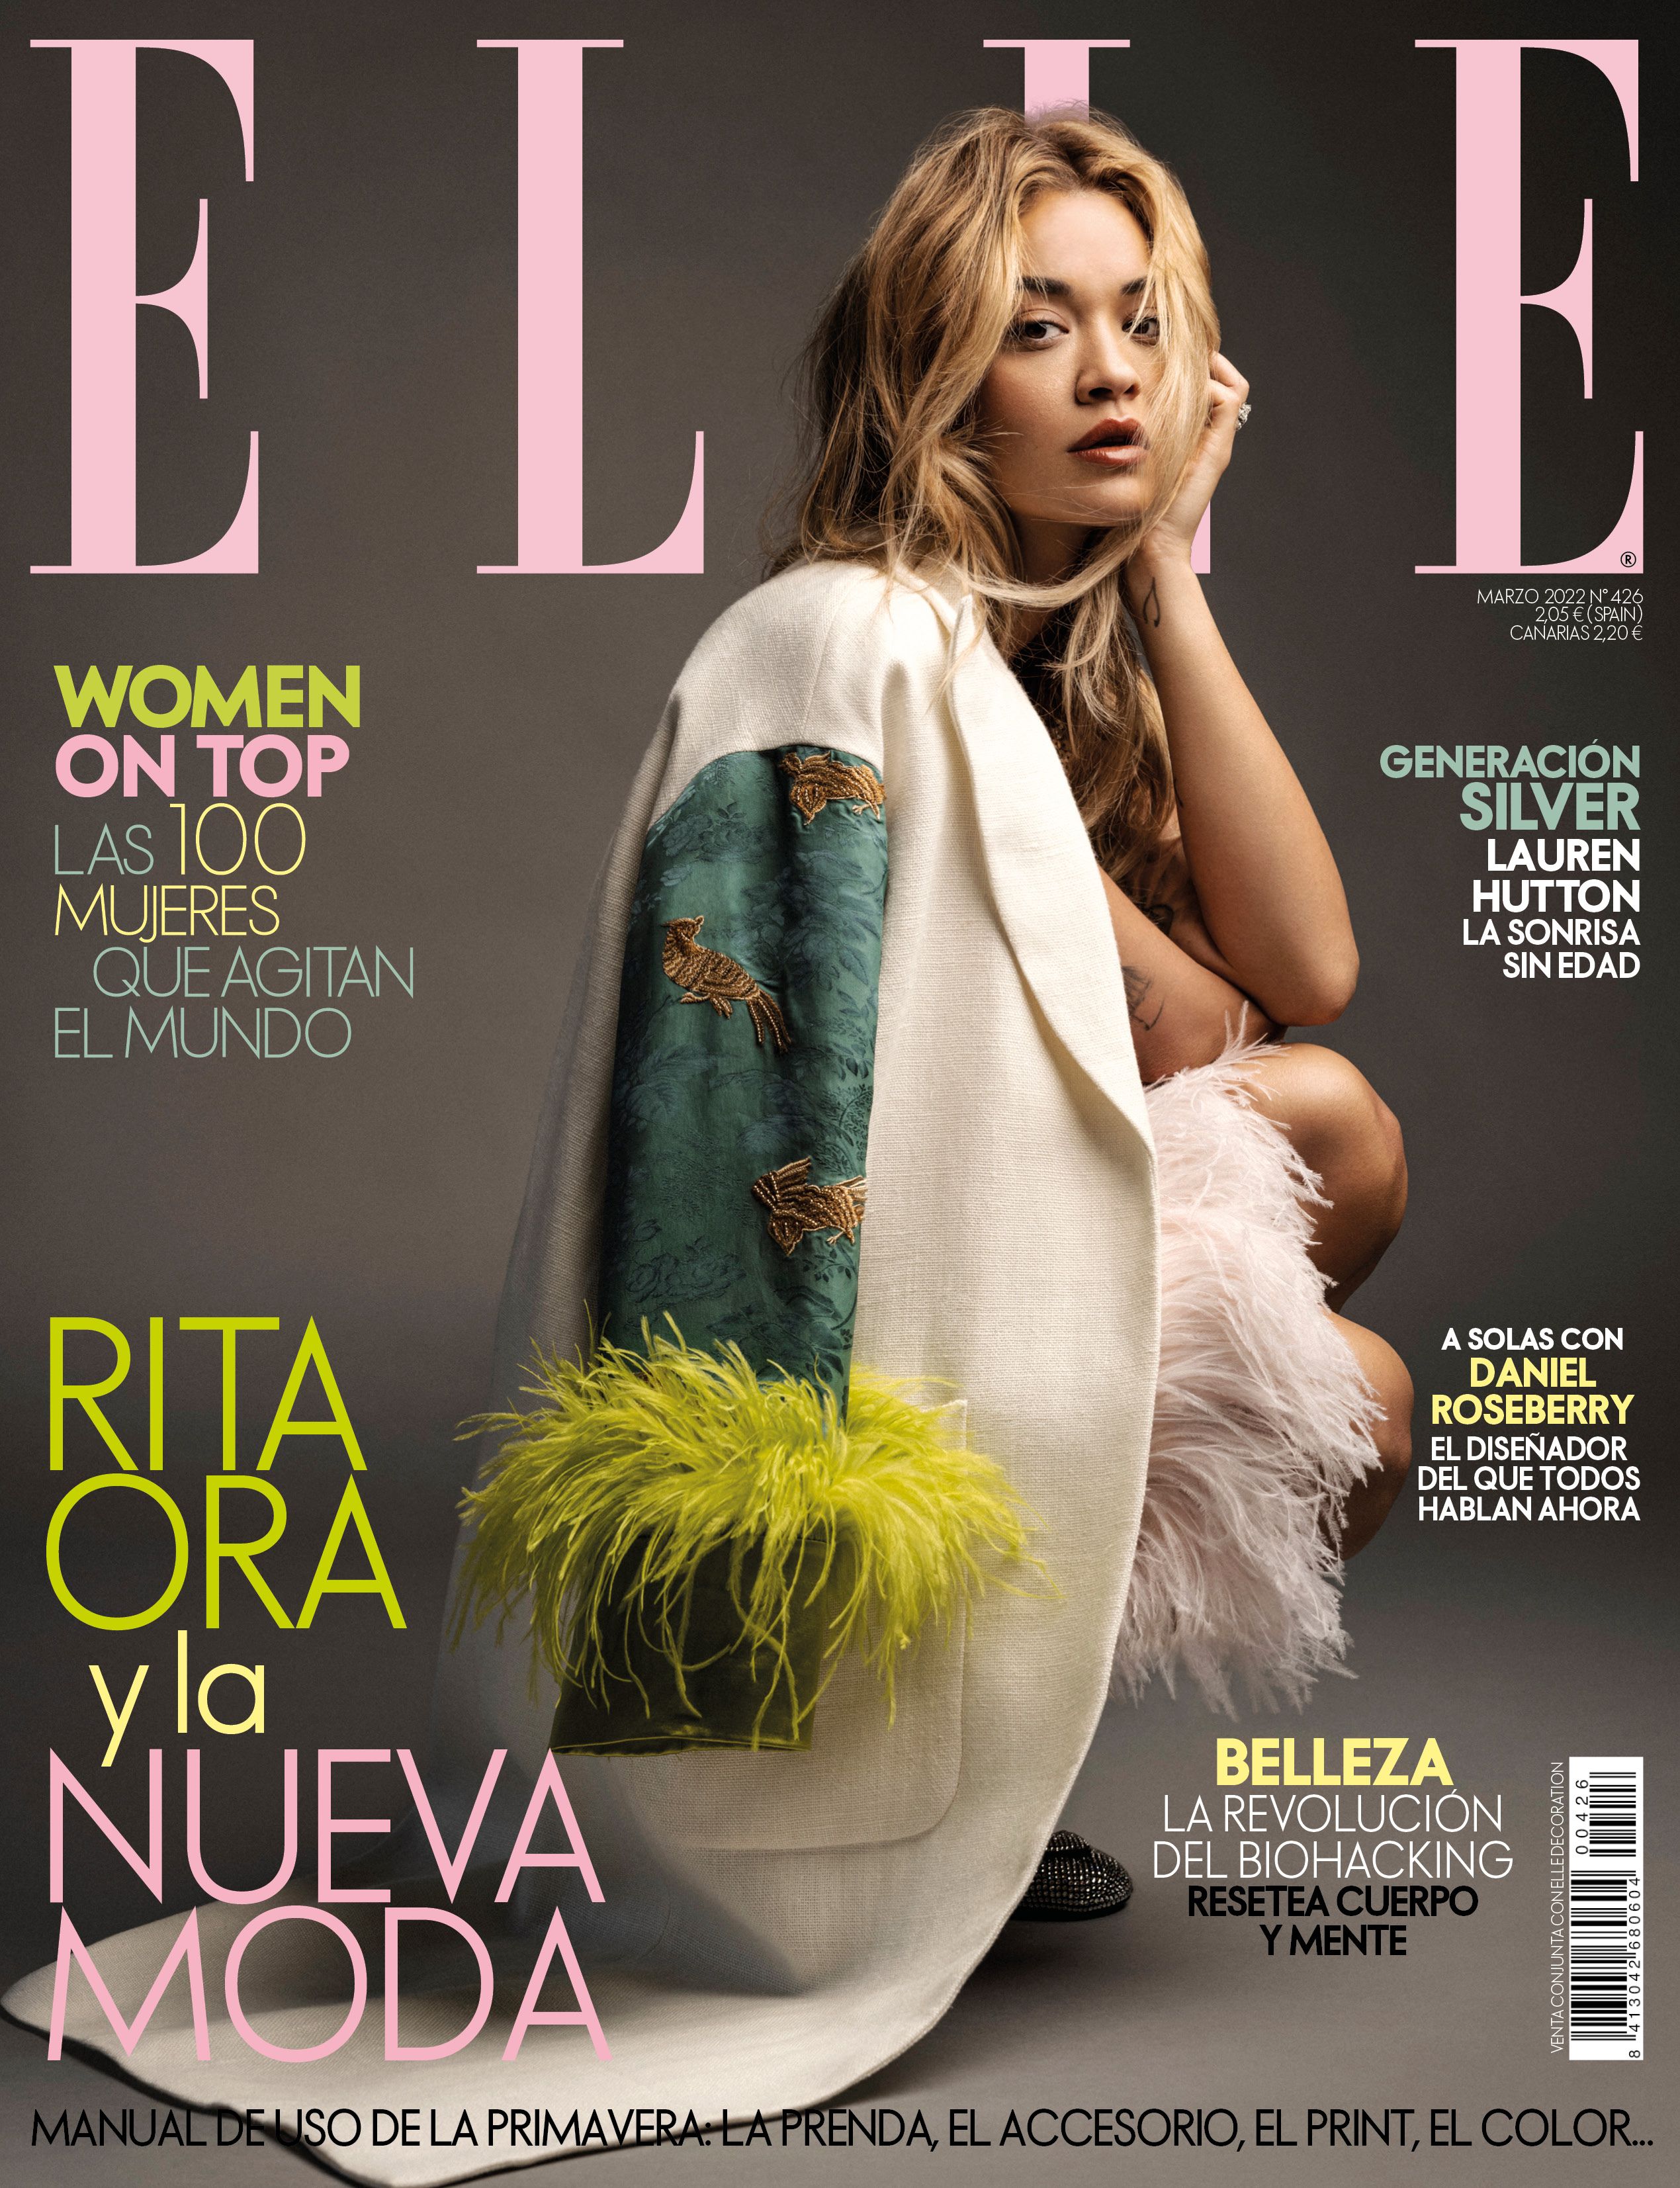 Rita Ora y la nueva moda en ELLE marzo